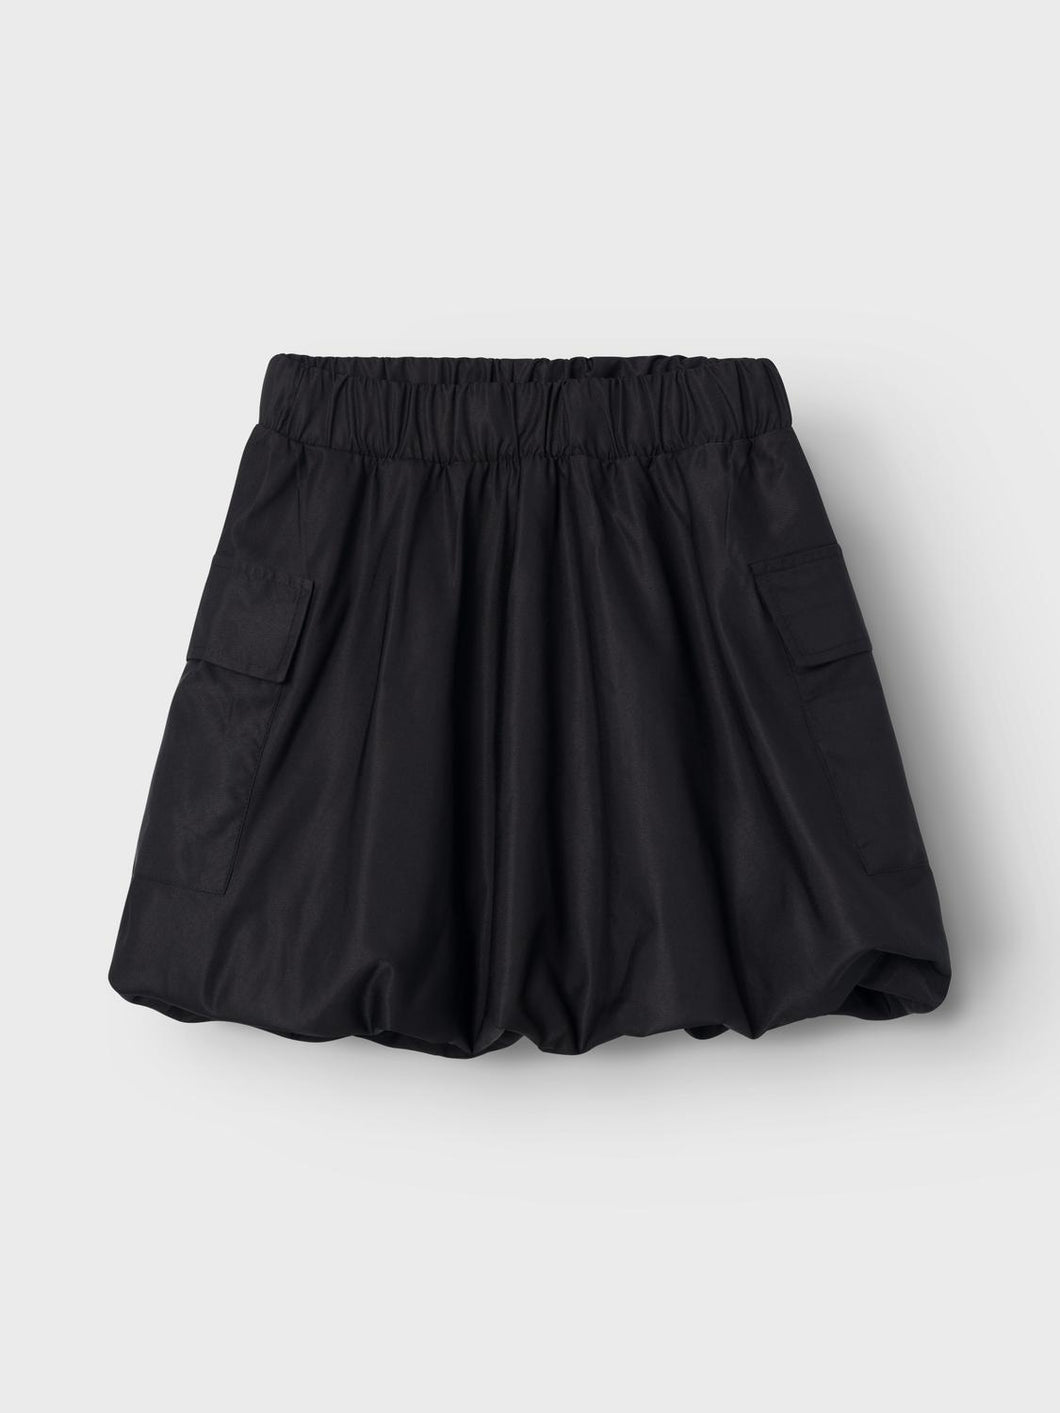 NKFBABIZ Skirts - Black